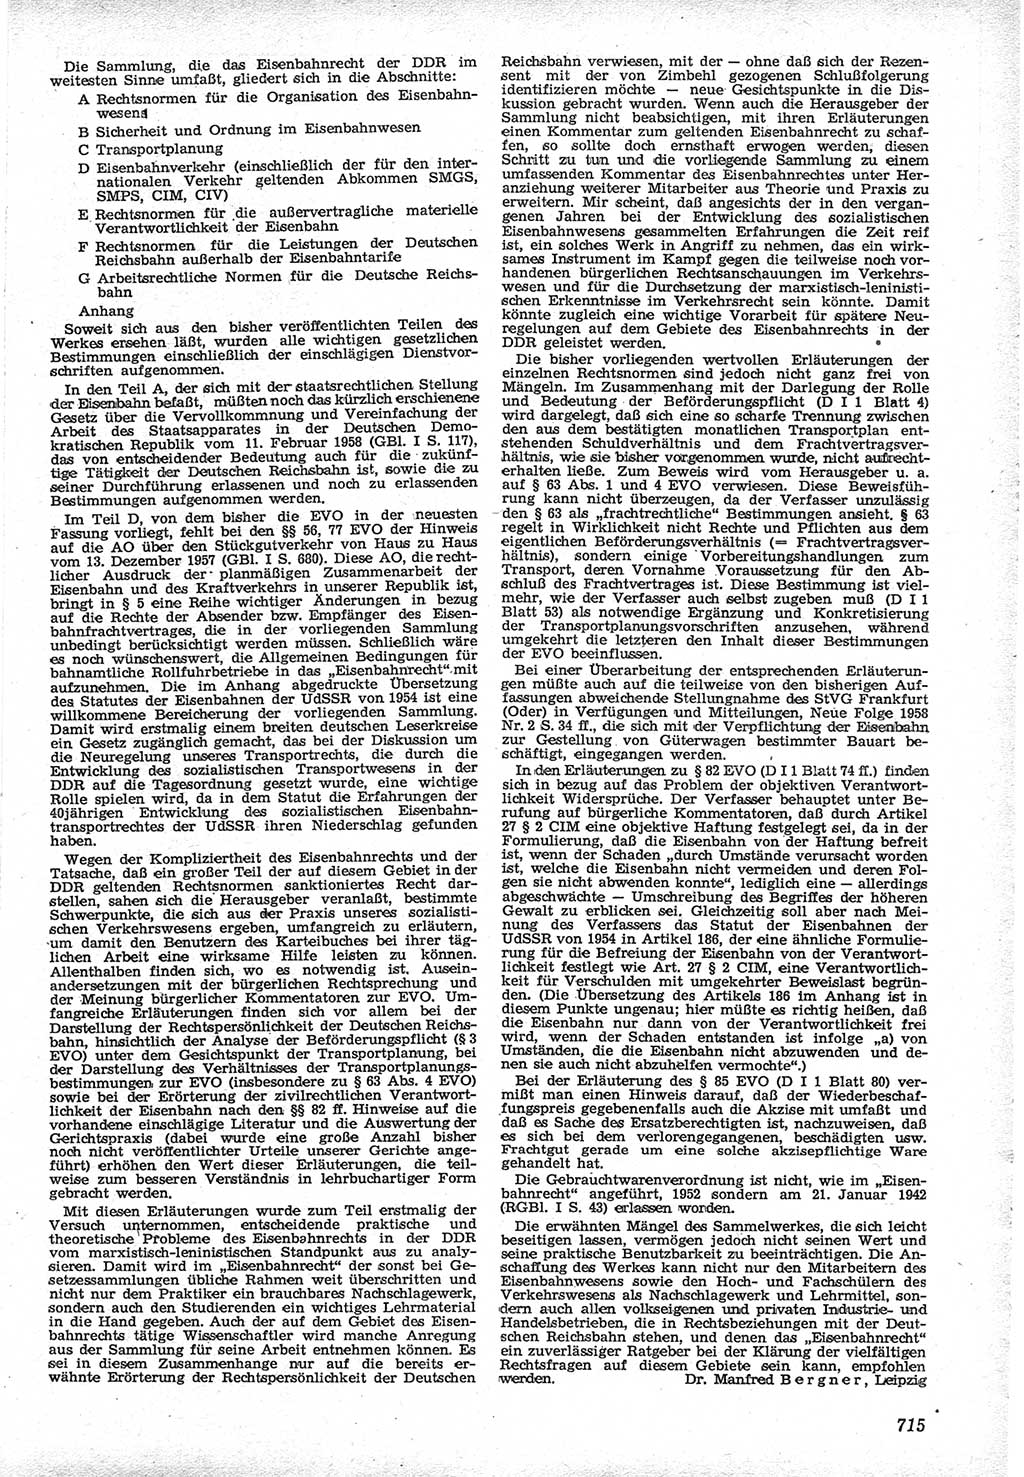 Neue Justiz (NJ), Zeitschrift für Recht und Rechtswissenschaft [Deutsche Demokratische Republik (DDR)], 12. Jahrgang 1958, Seite 715 (NJ DDR 1958, S. 715)